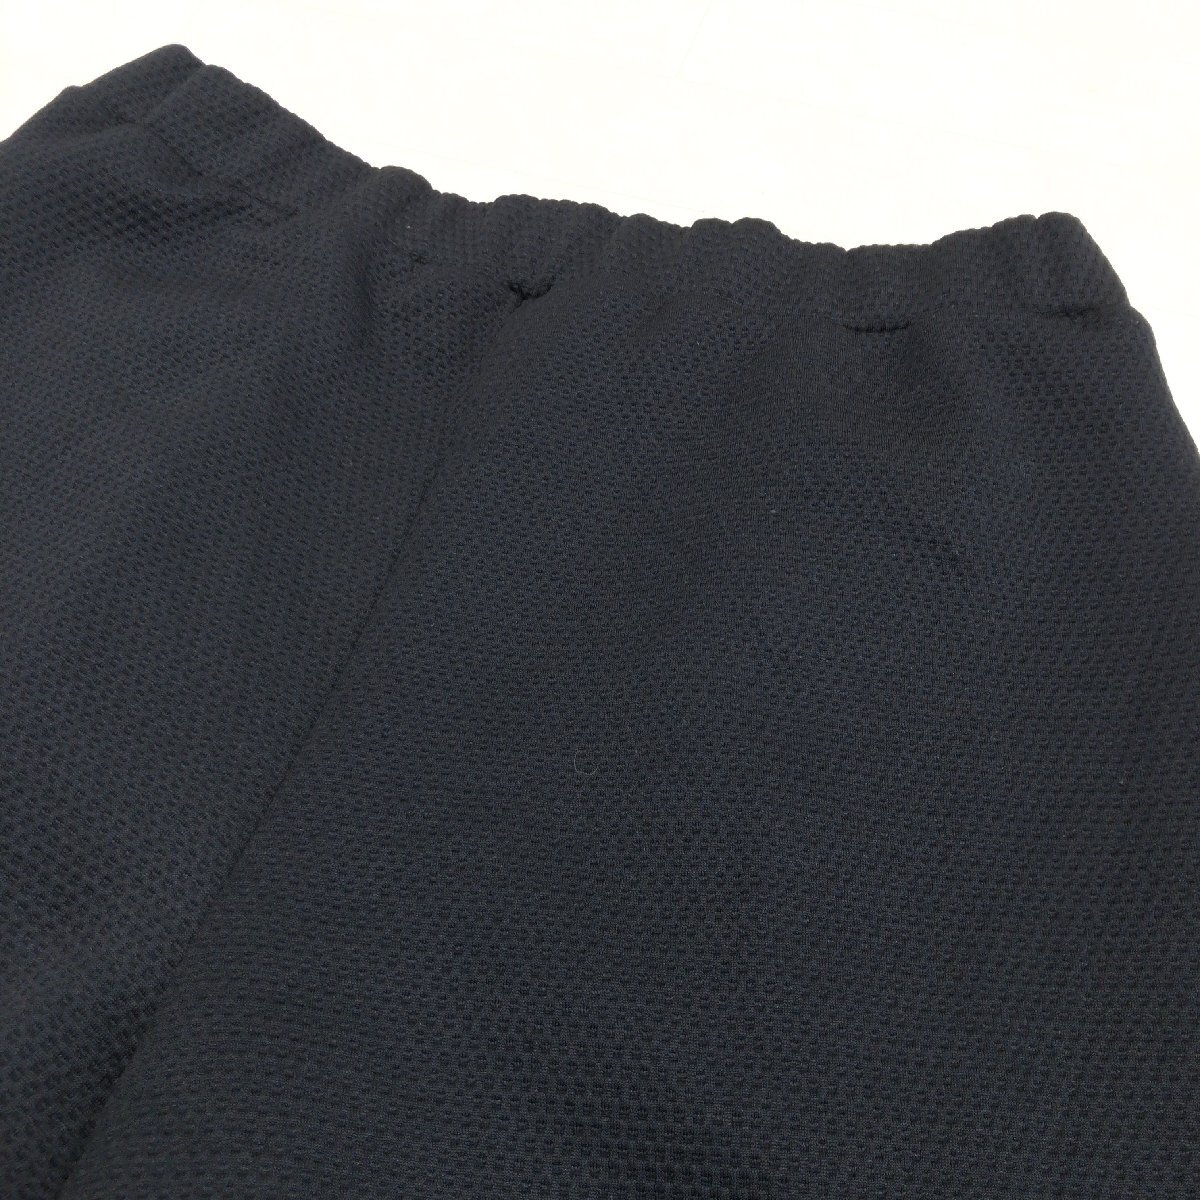 DoCLASSEduklase стрейч вафля широкий гаучо брюки XL чёрный черный юбка-брюки широкий брюки LL 2L свободно большой 